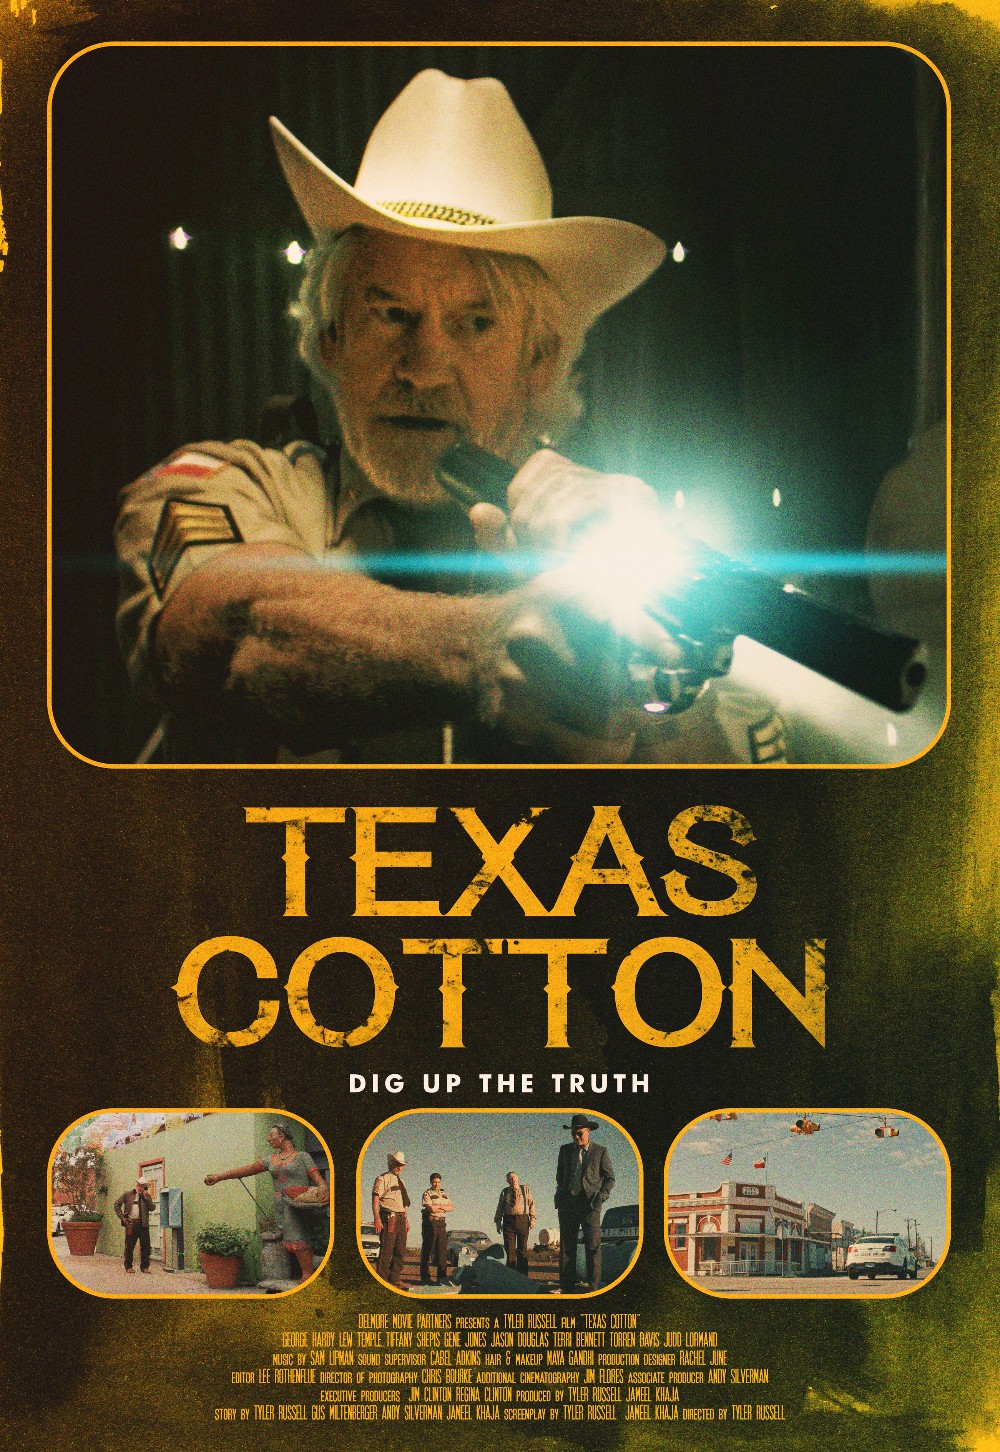 Texas Cotton 2018 [720p] WEBRip (x264) Ae3c4fb8dc3925b8f750f7efcc5d6606